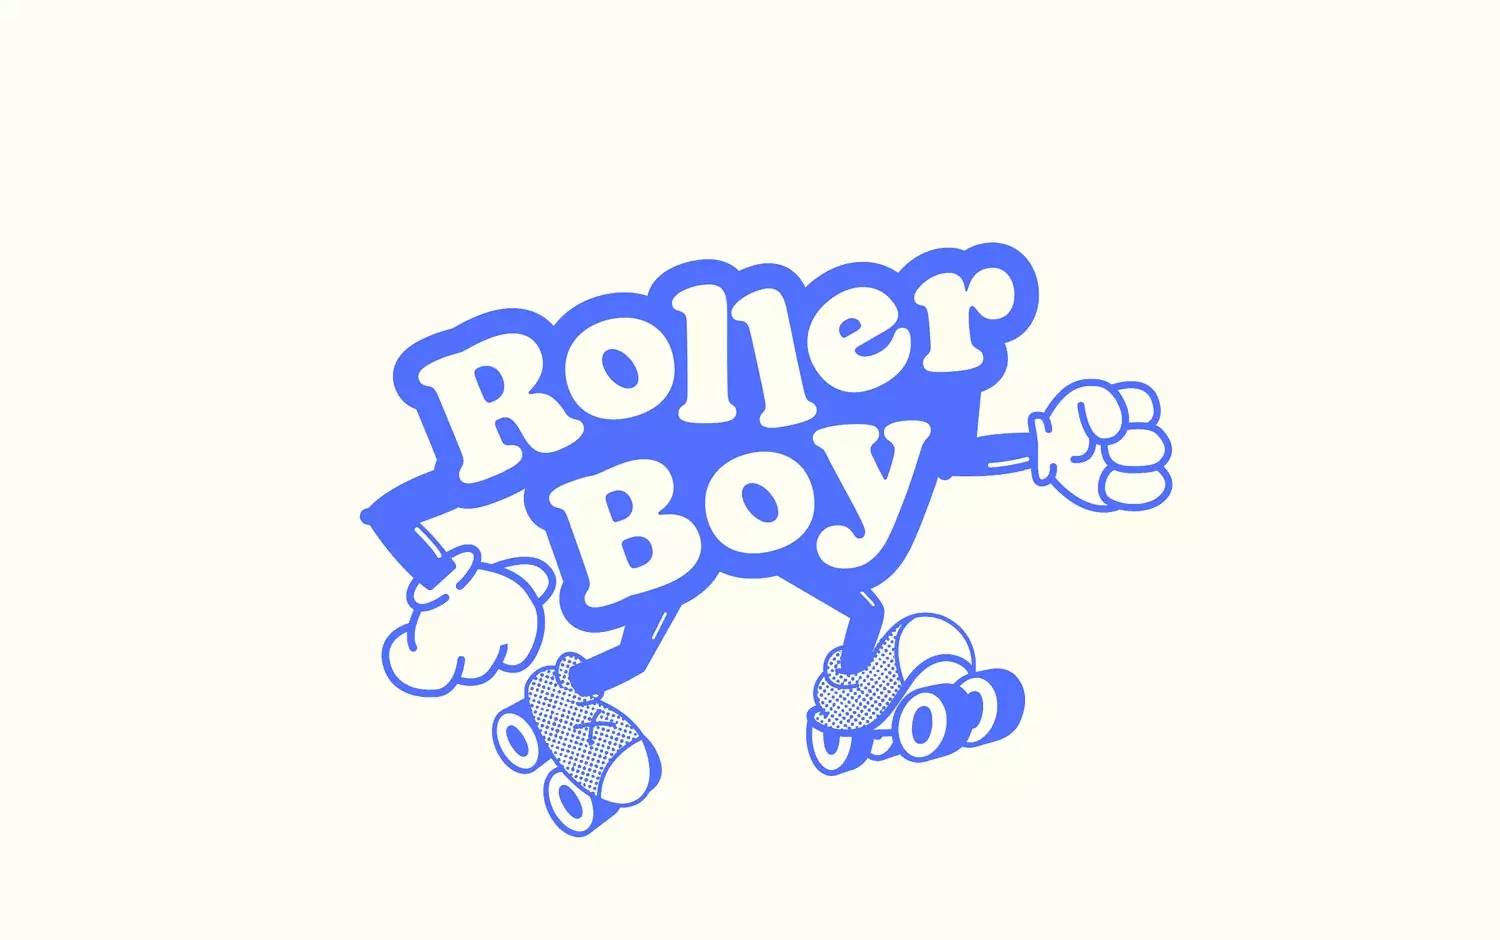 复古风格的Roller Boy餐厅品牌设计